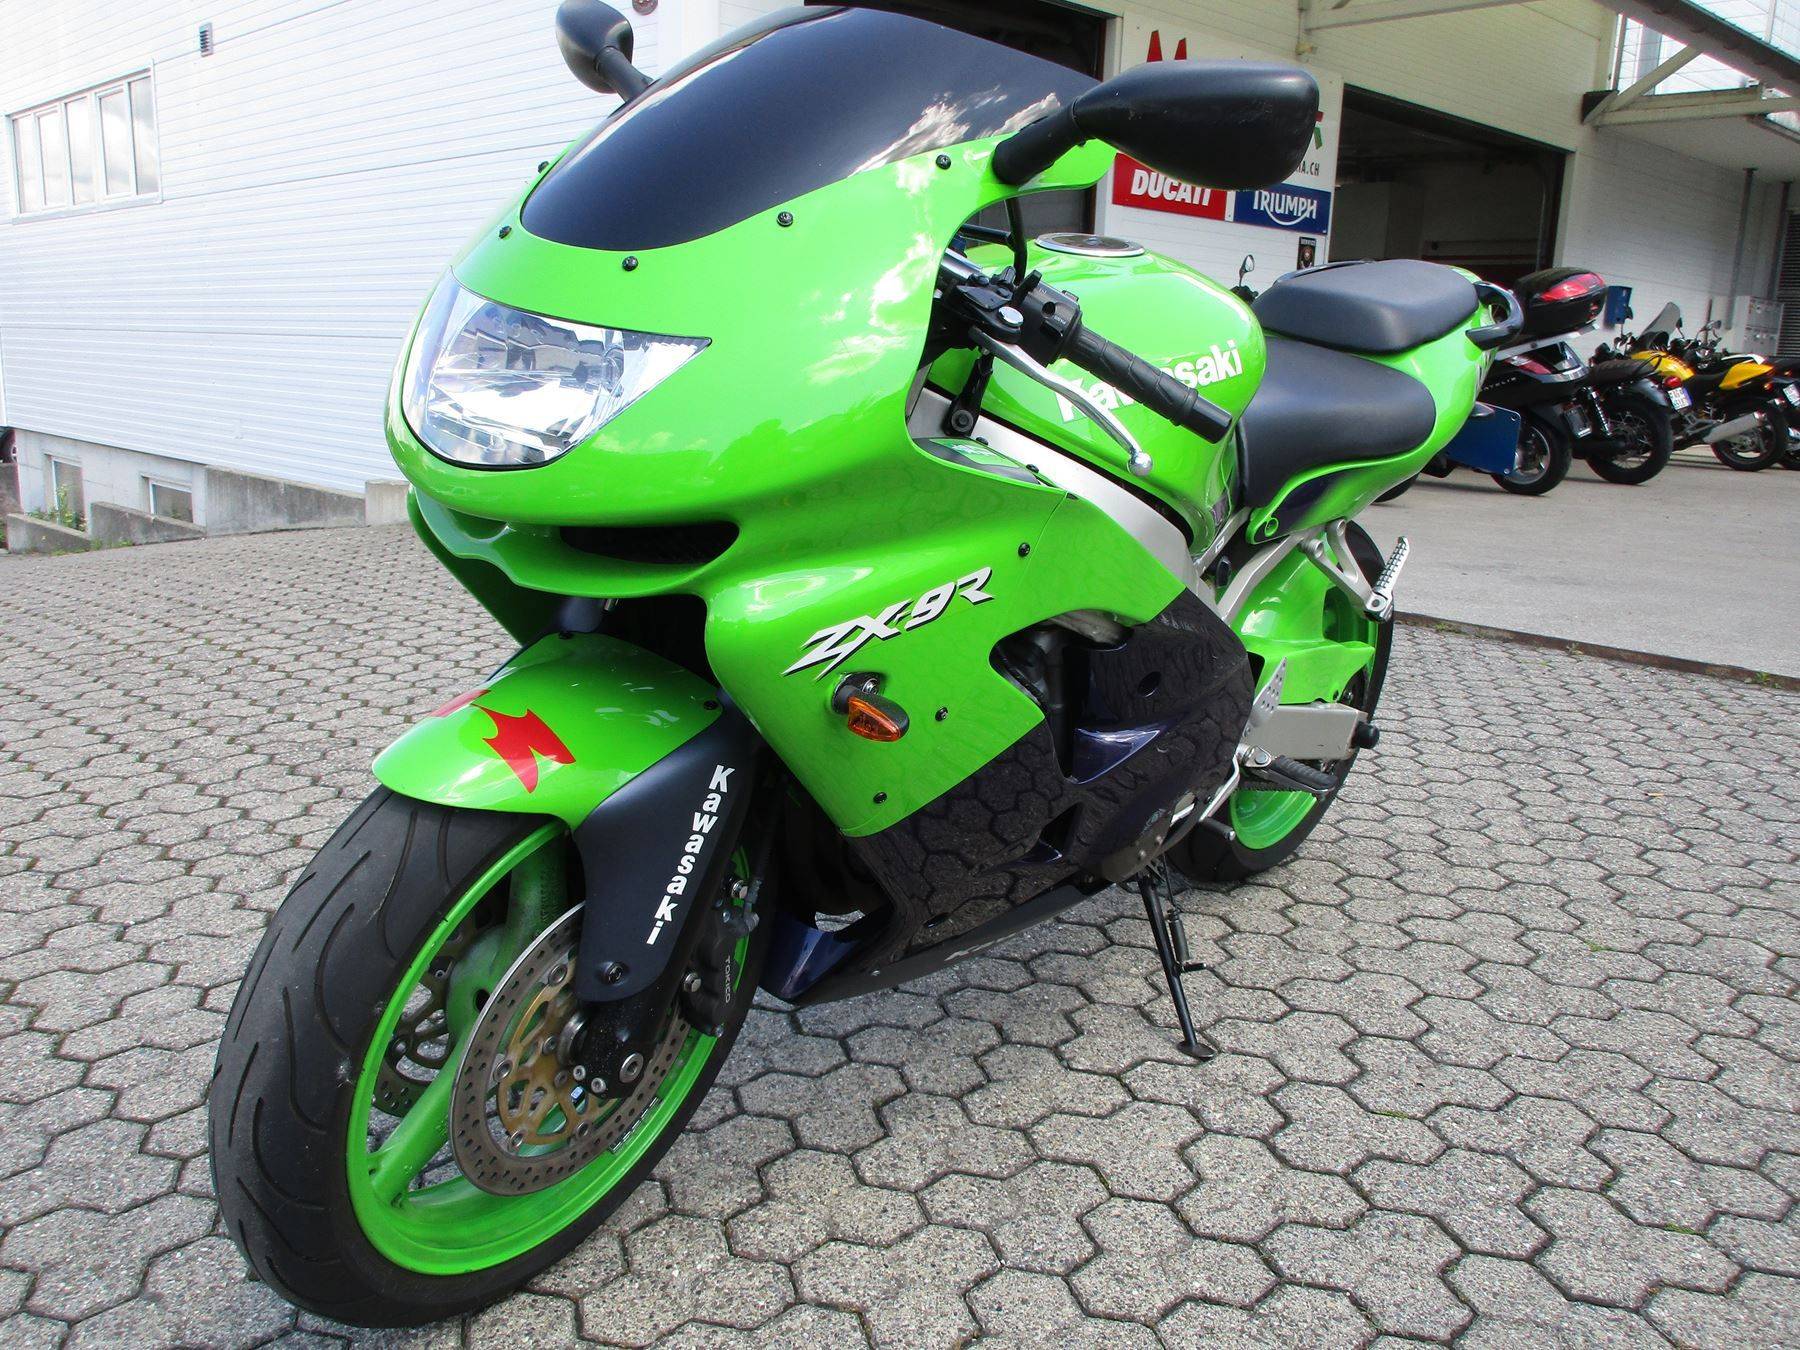 Мотоцикл kawasaki zx-7r идеален на гоночном треке